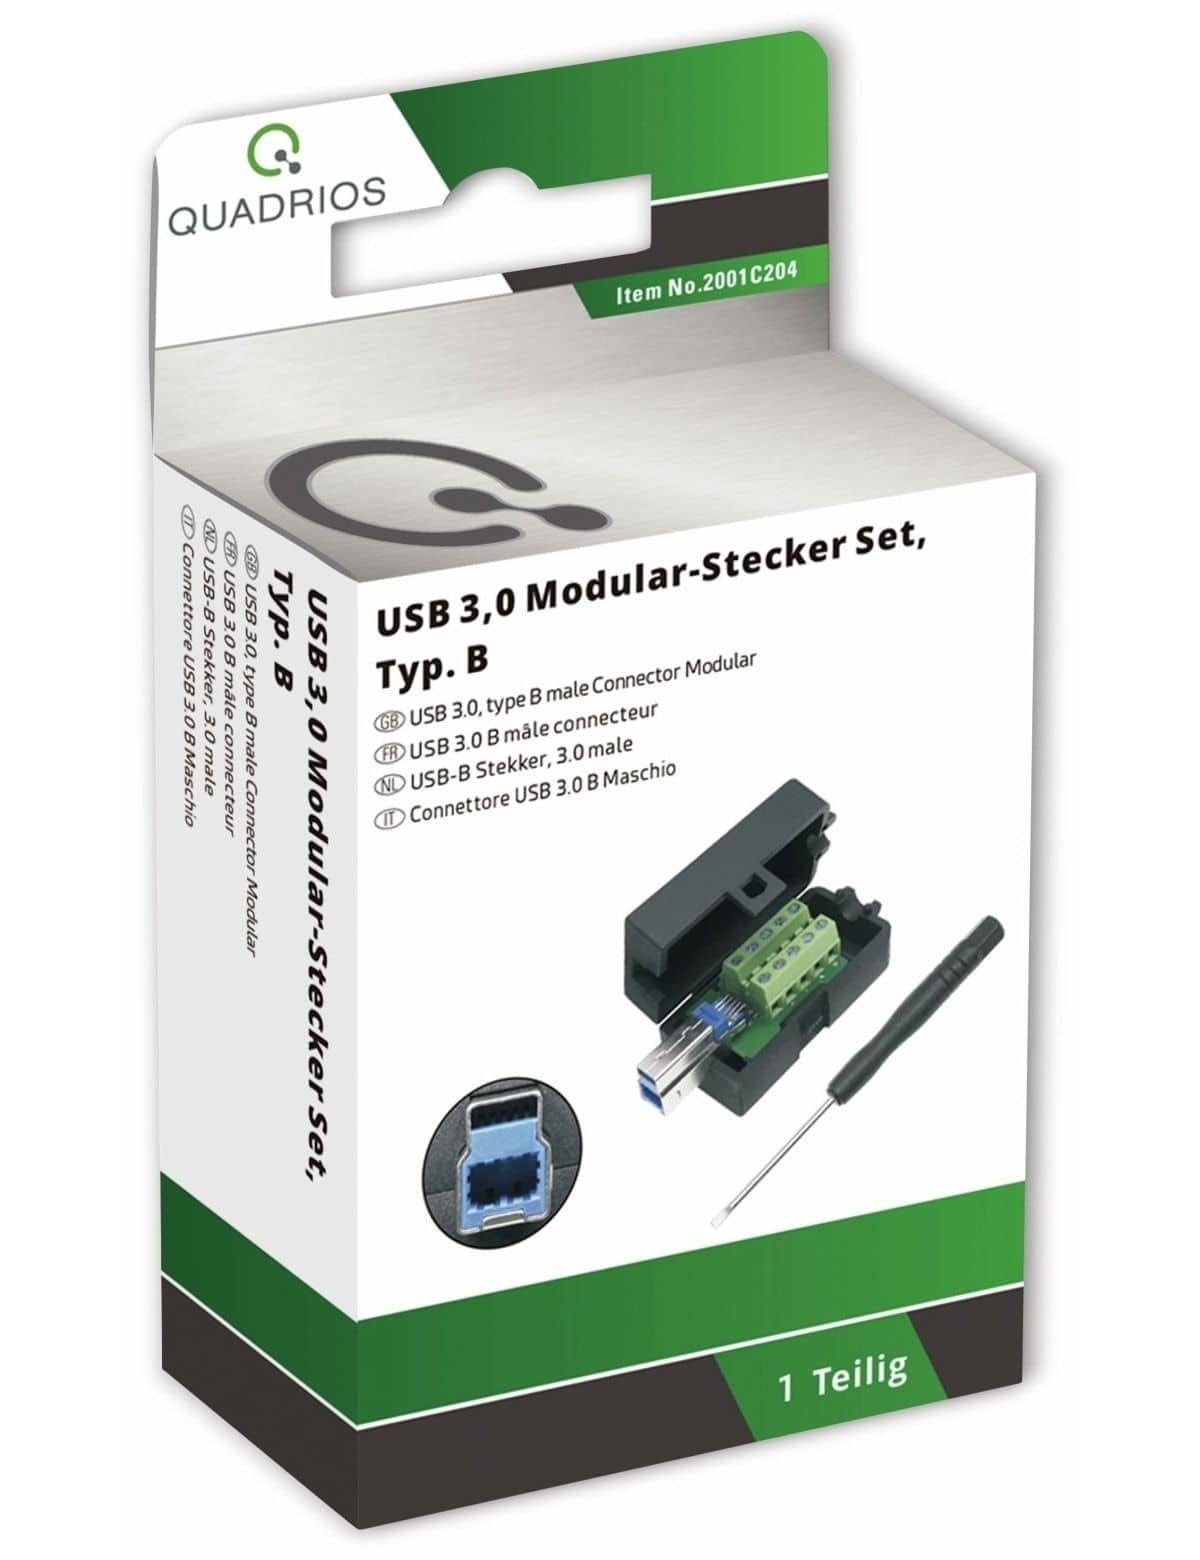 QUADRIOS, 3.0 2001C204, - USB-Modular-Set, Klemmen USB Quadrios